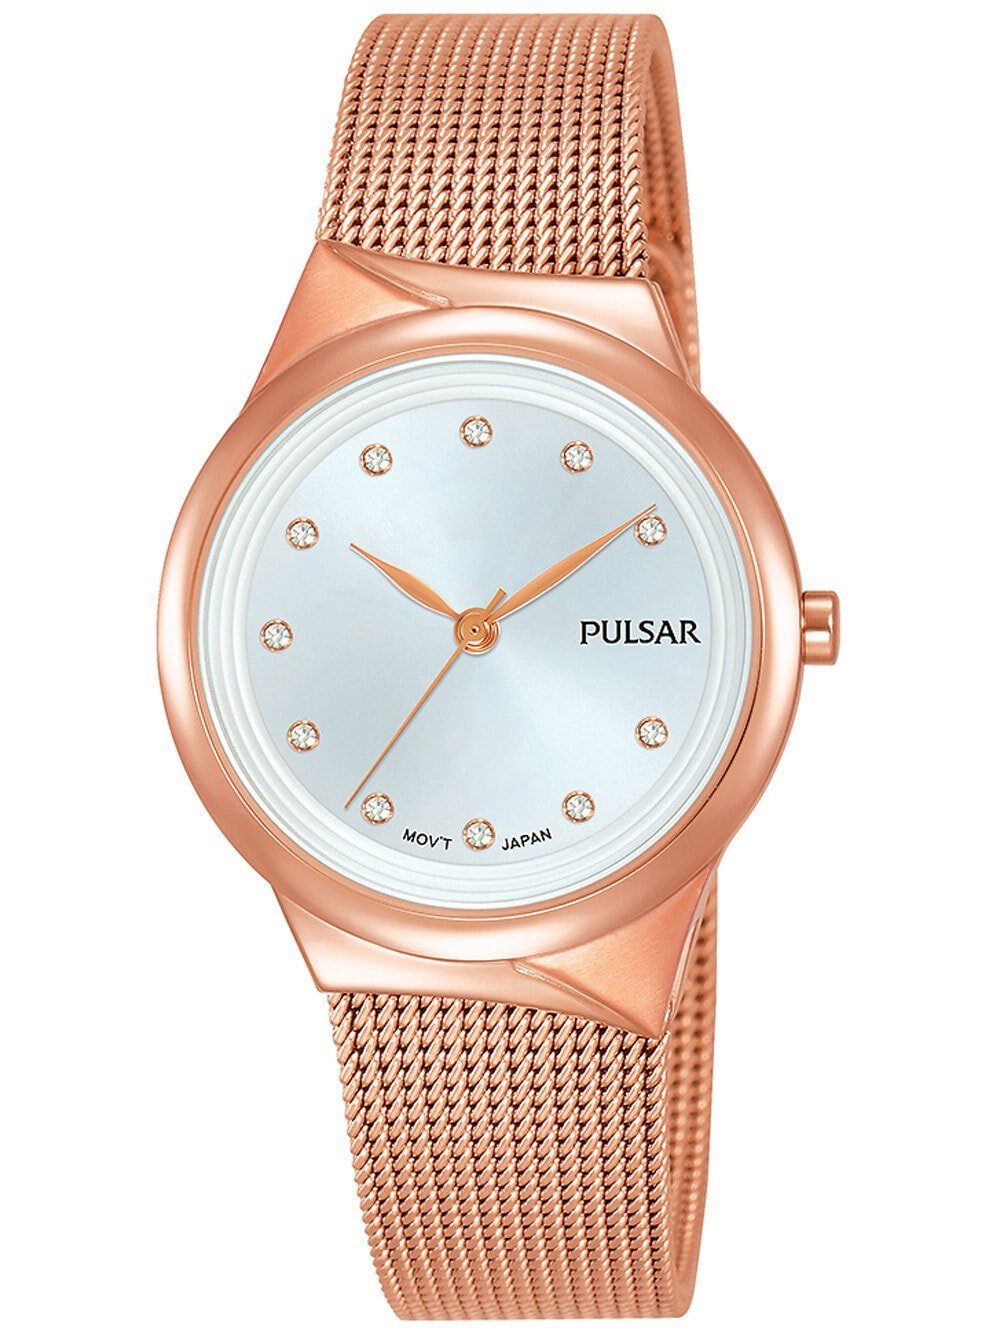 Женские наручные кварцевые часы Pulsar ремешок из нержавеющей стали. Водонепроницаемость-3 АТМ. Прочное, минеральное стекло. Циферблат декорирован камнями  Swarovski.